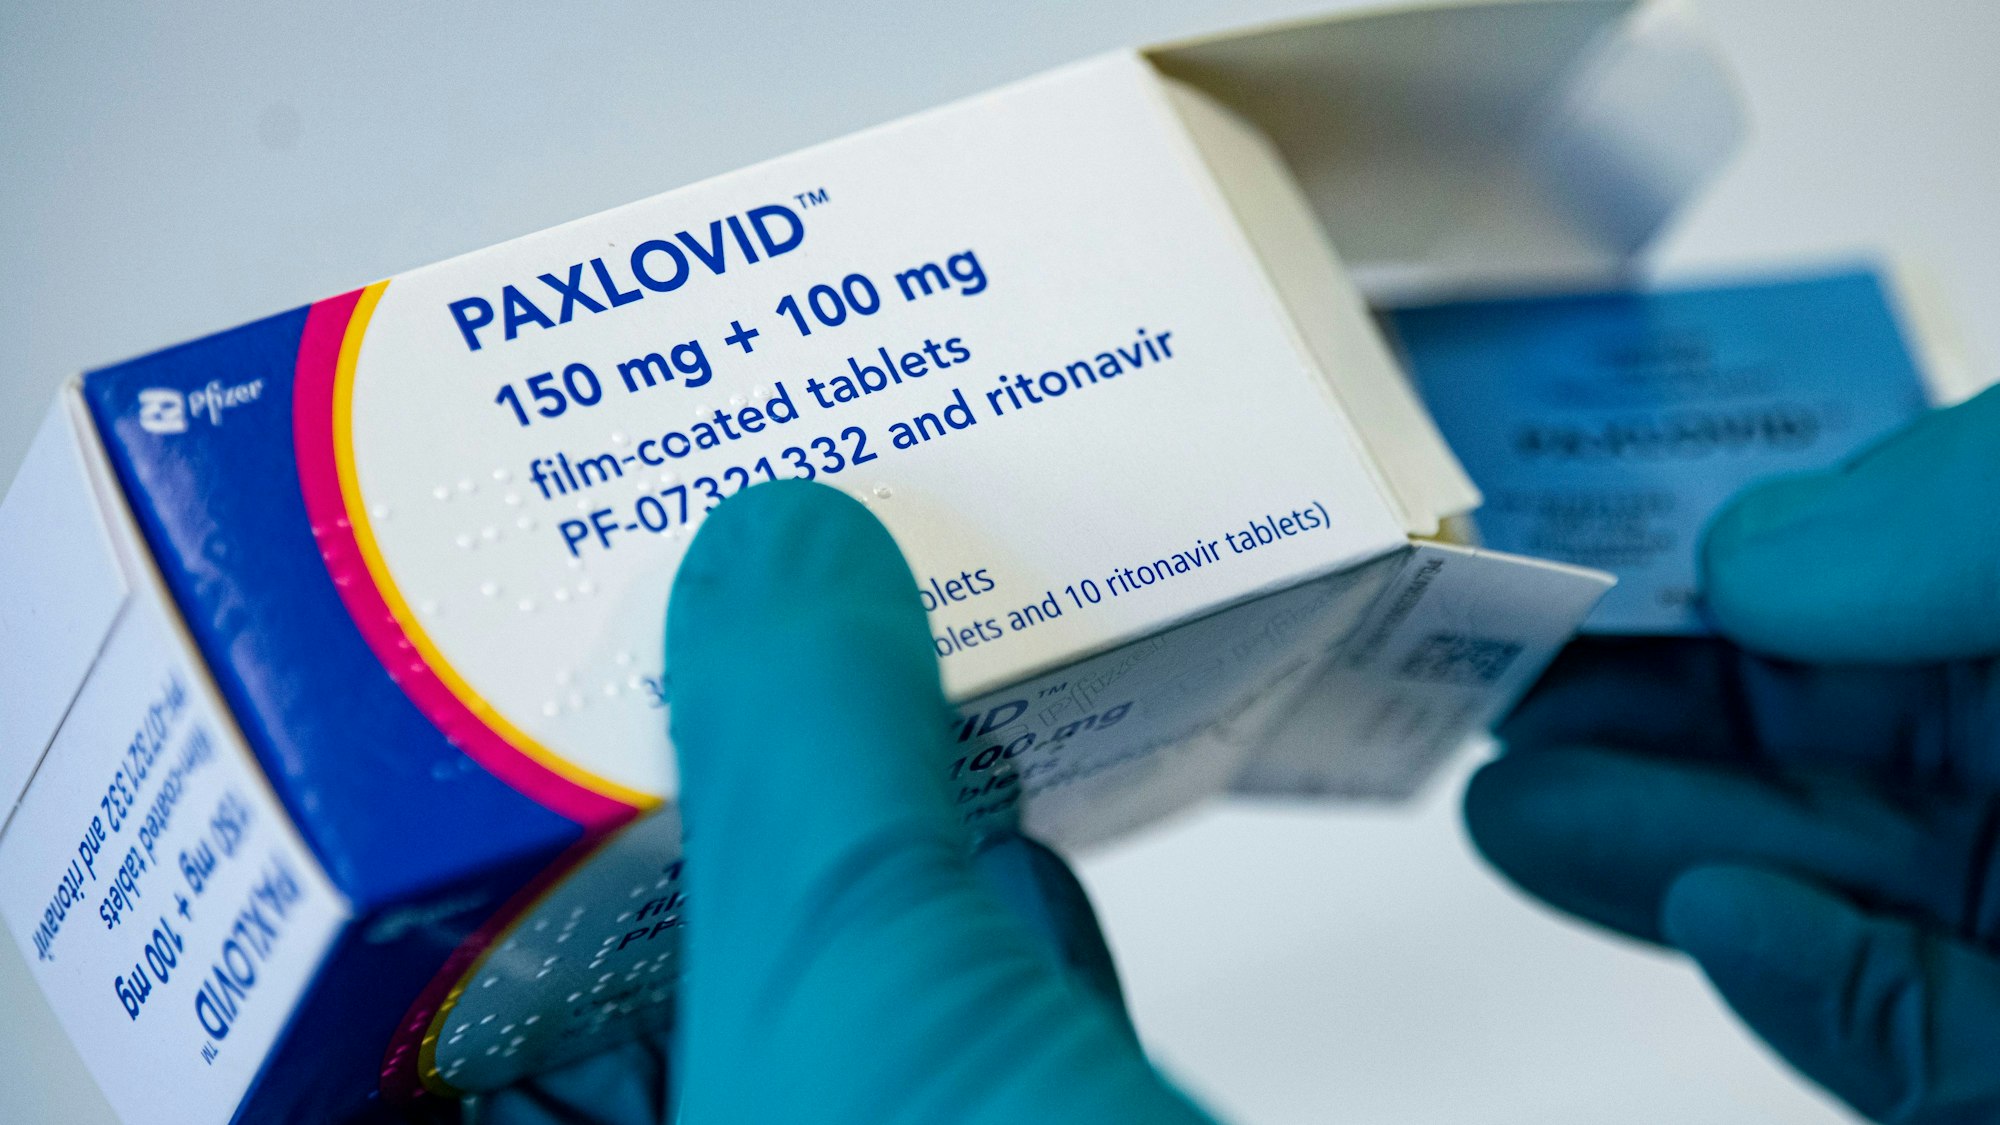 Ein Apotheker hält das Corona-Medikament Paxlovid in den Händen. Bundesweit soll es zu illegalem Weiterverkauf des Mittels gekommen sein. (Symbolbild)